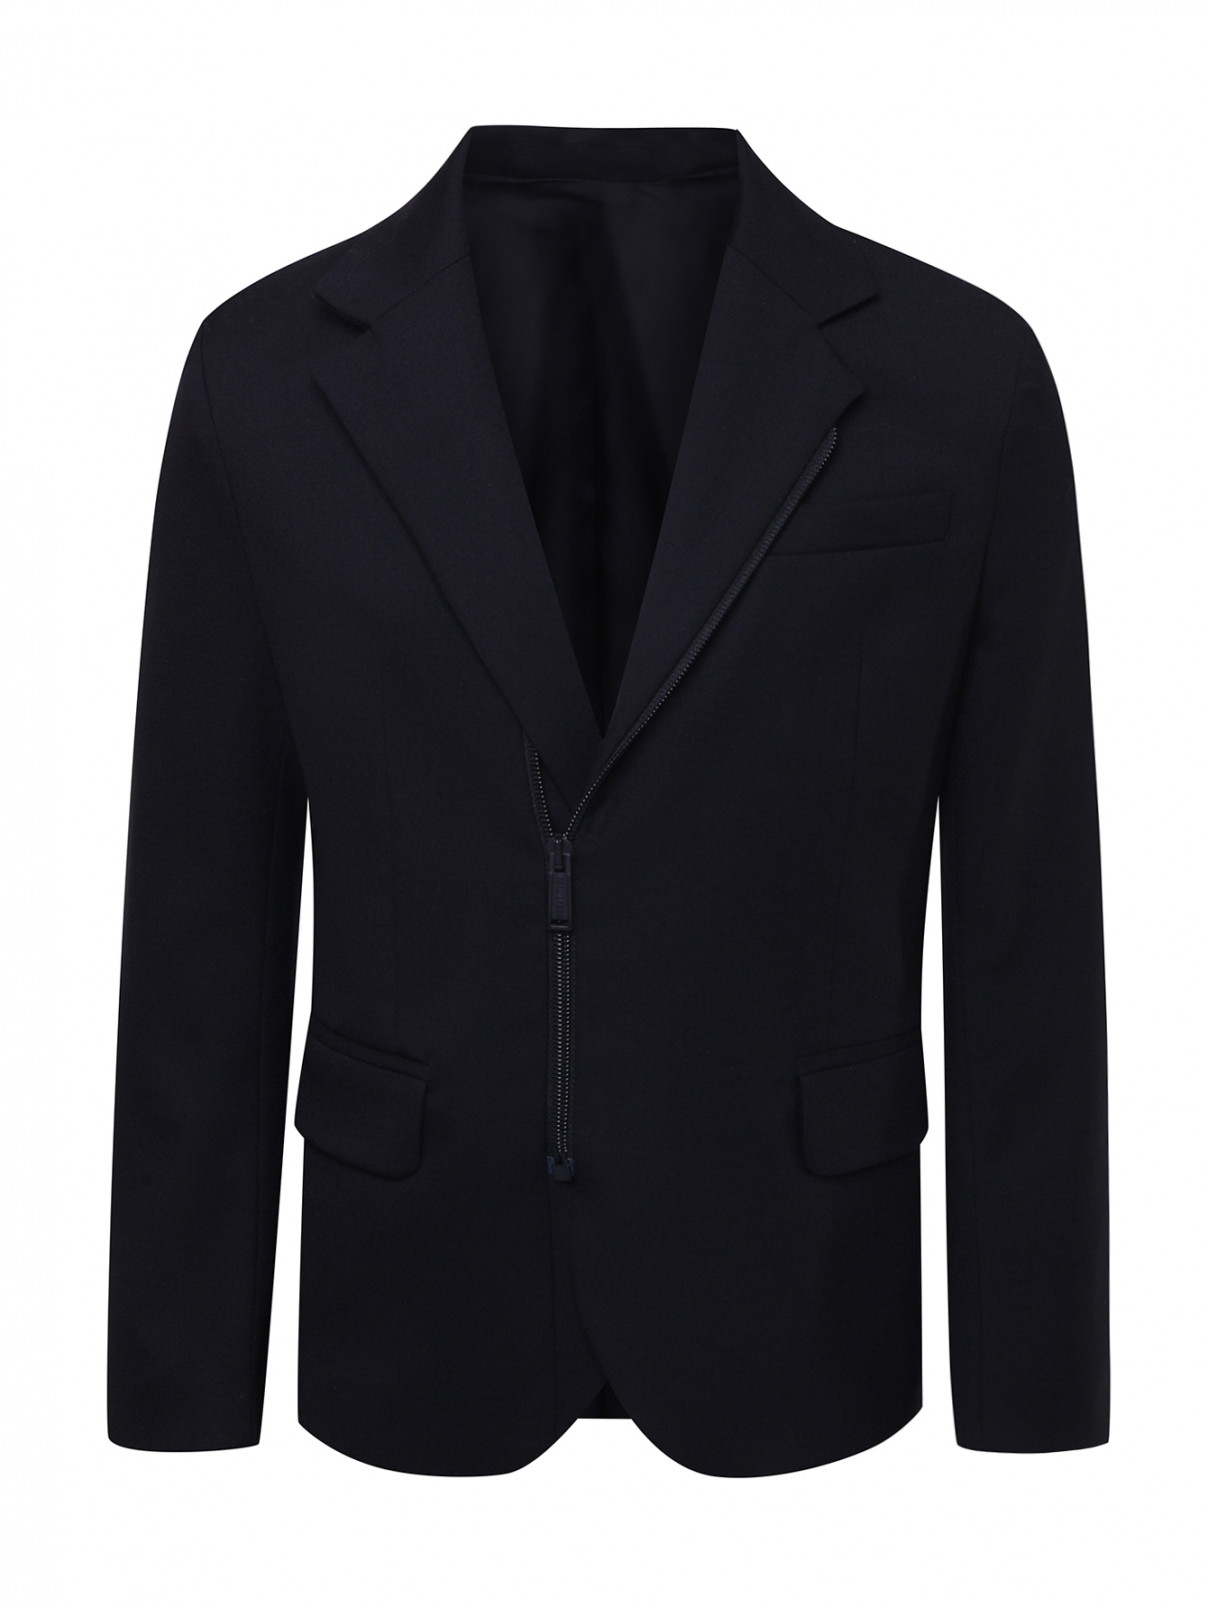 Куртка-пиджак на молнии Dsquared2  –  Общий вид  – Цвет:  Черный